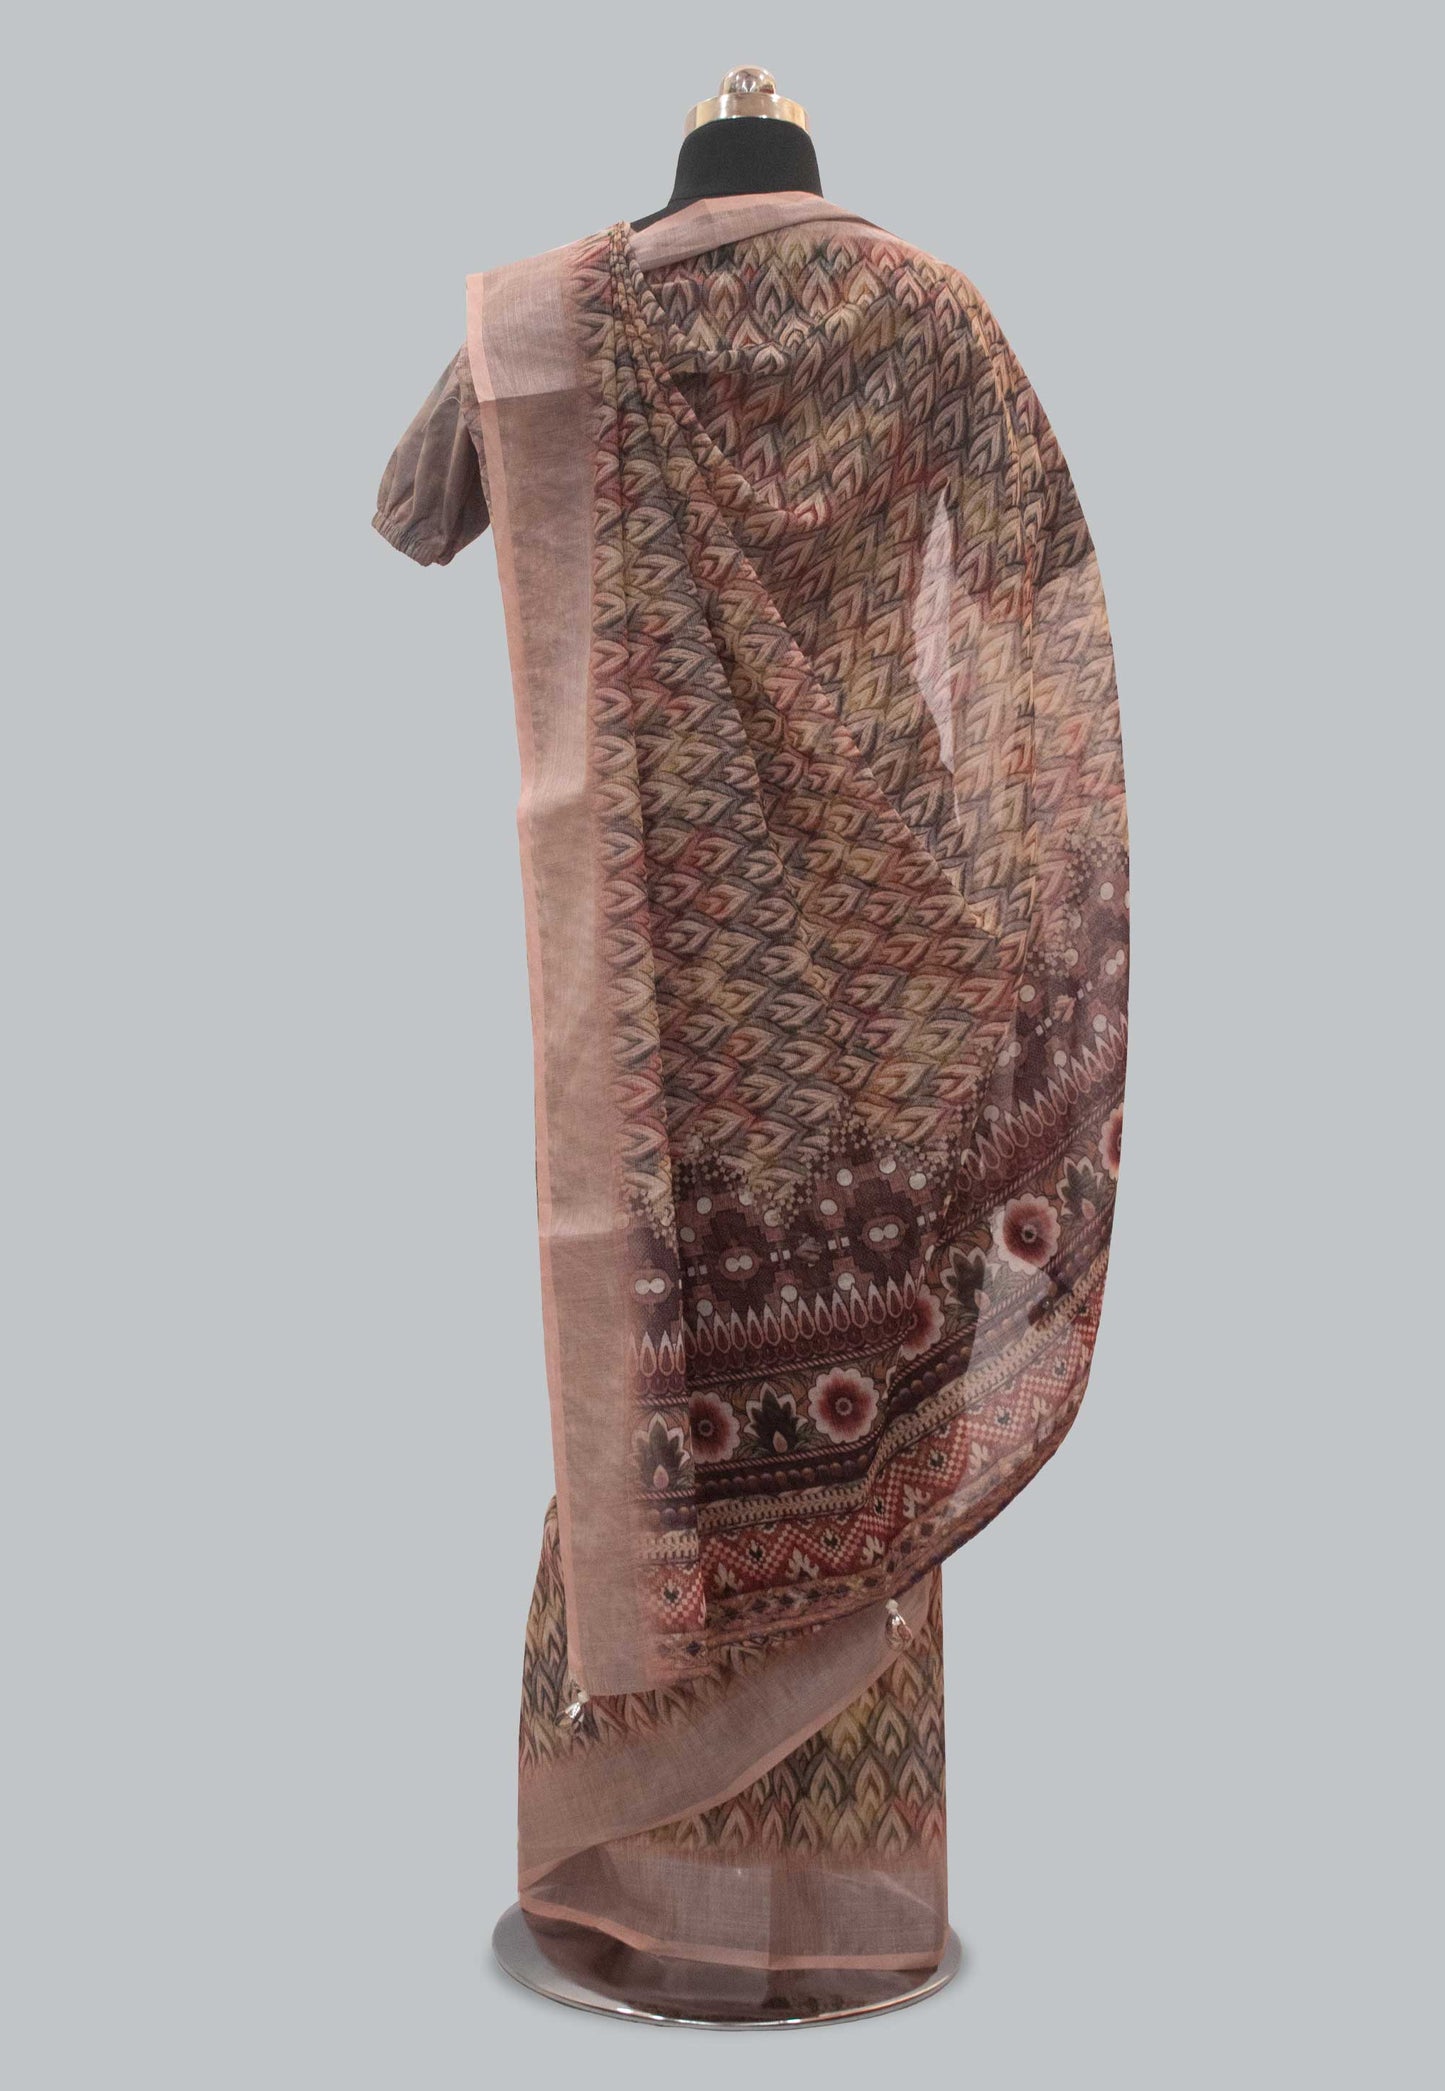 Digital Printed Linen Saree in Multicolor